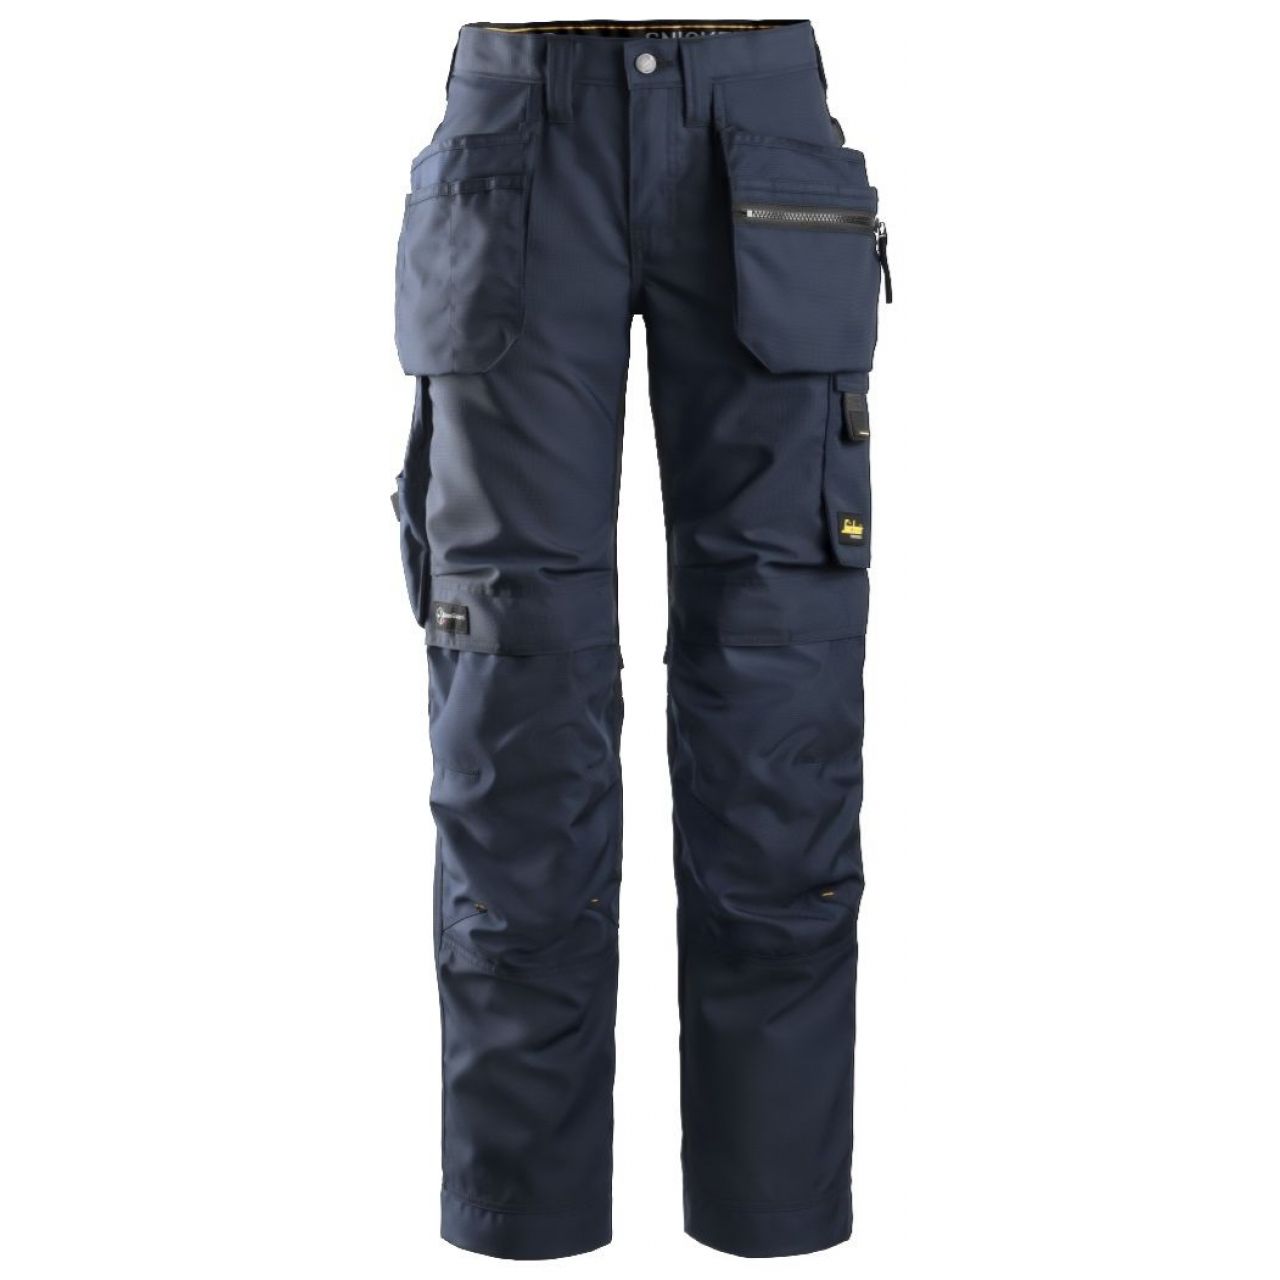 Pantalon de mujer AllroundWork+ con bolsillos flotantes azul marino-negro talla 080